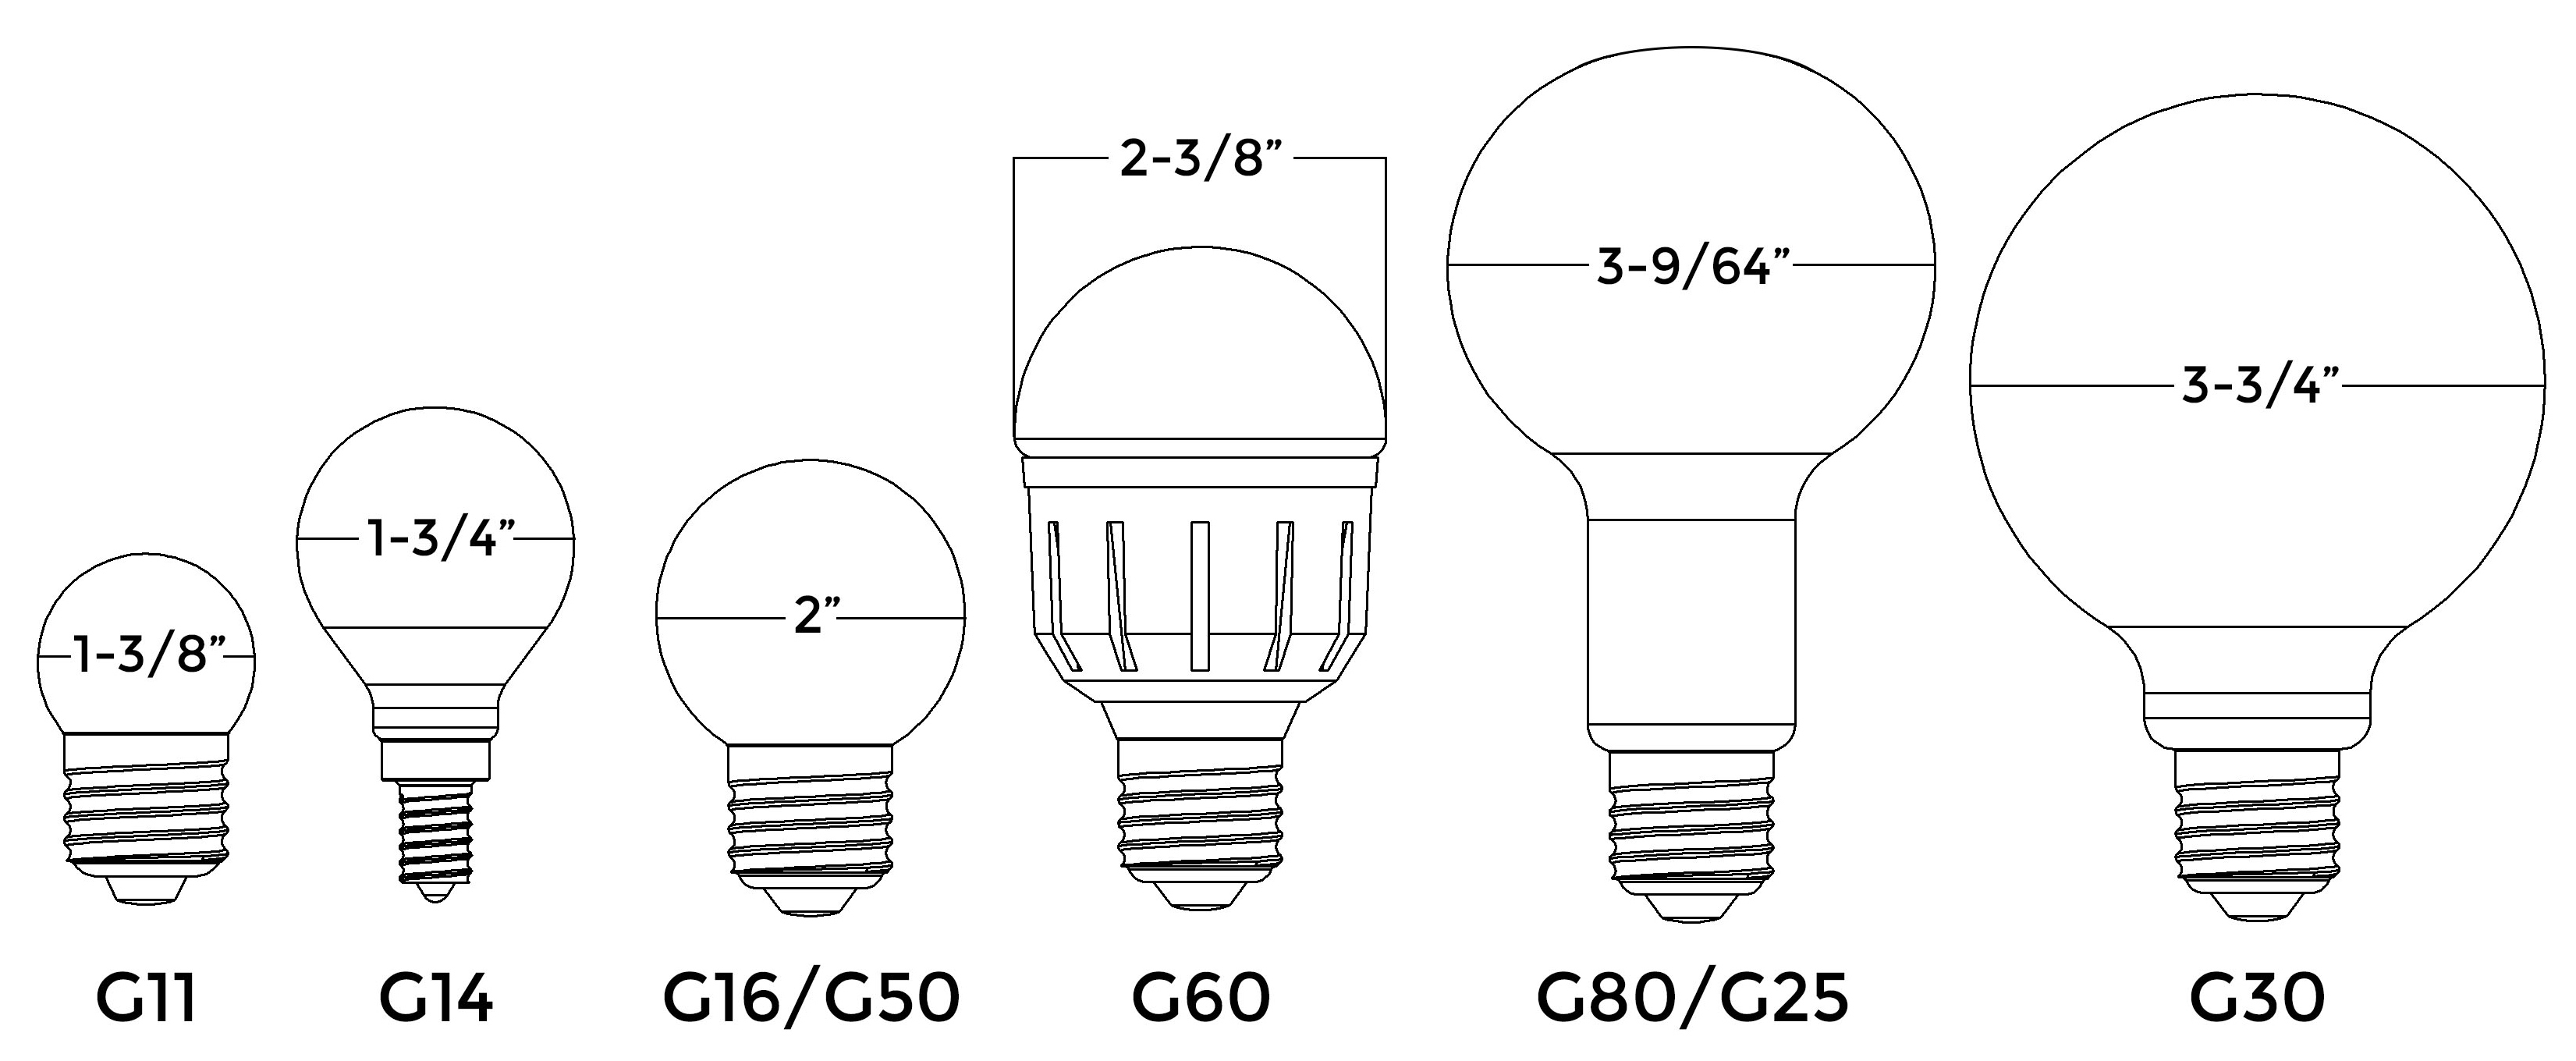 G25 Light Bulb Size • Bulbs Ideas